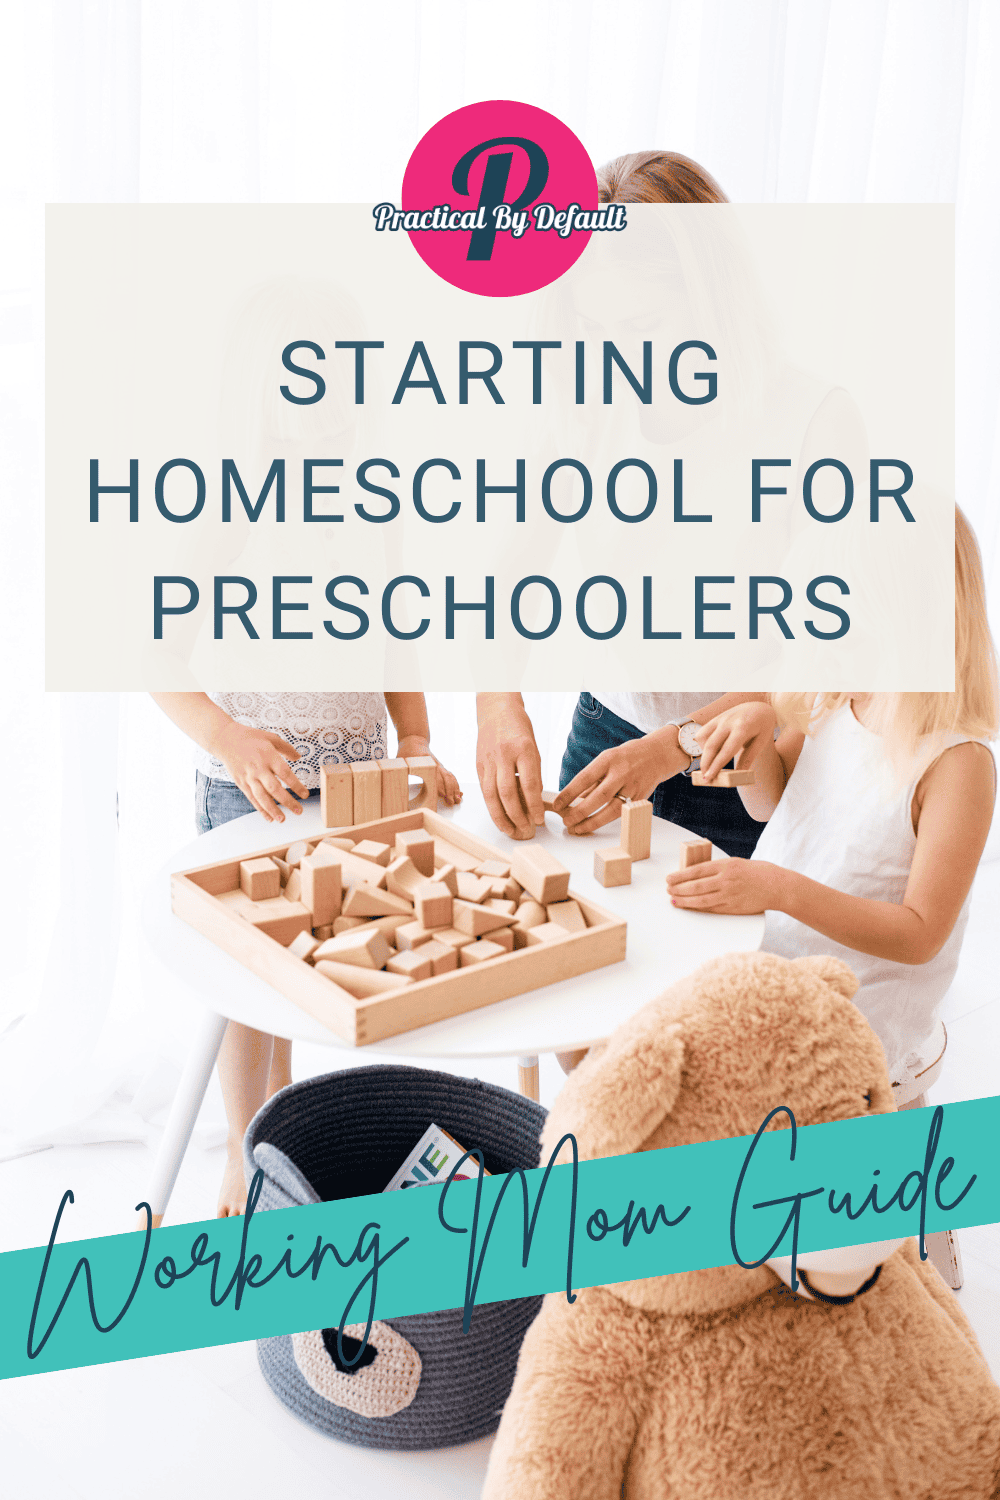 5 Easy Steps for Starting Homeschool for Preschoolers